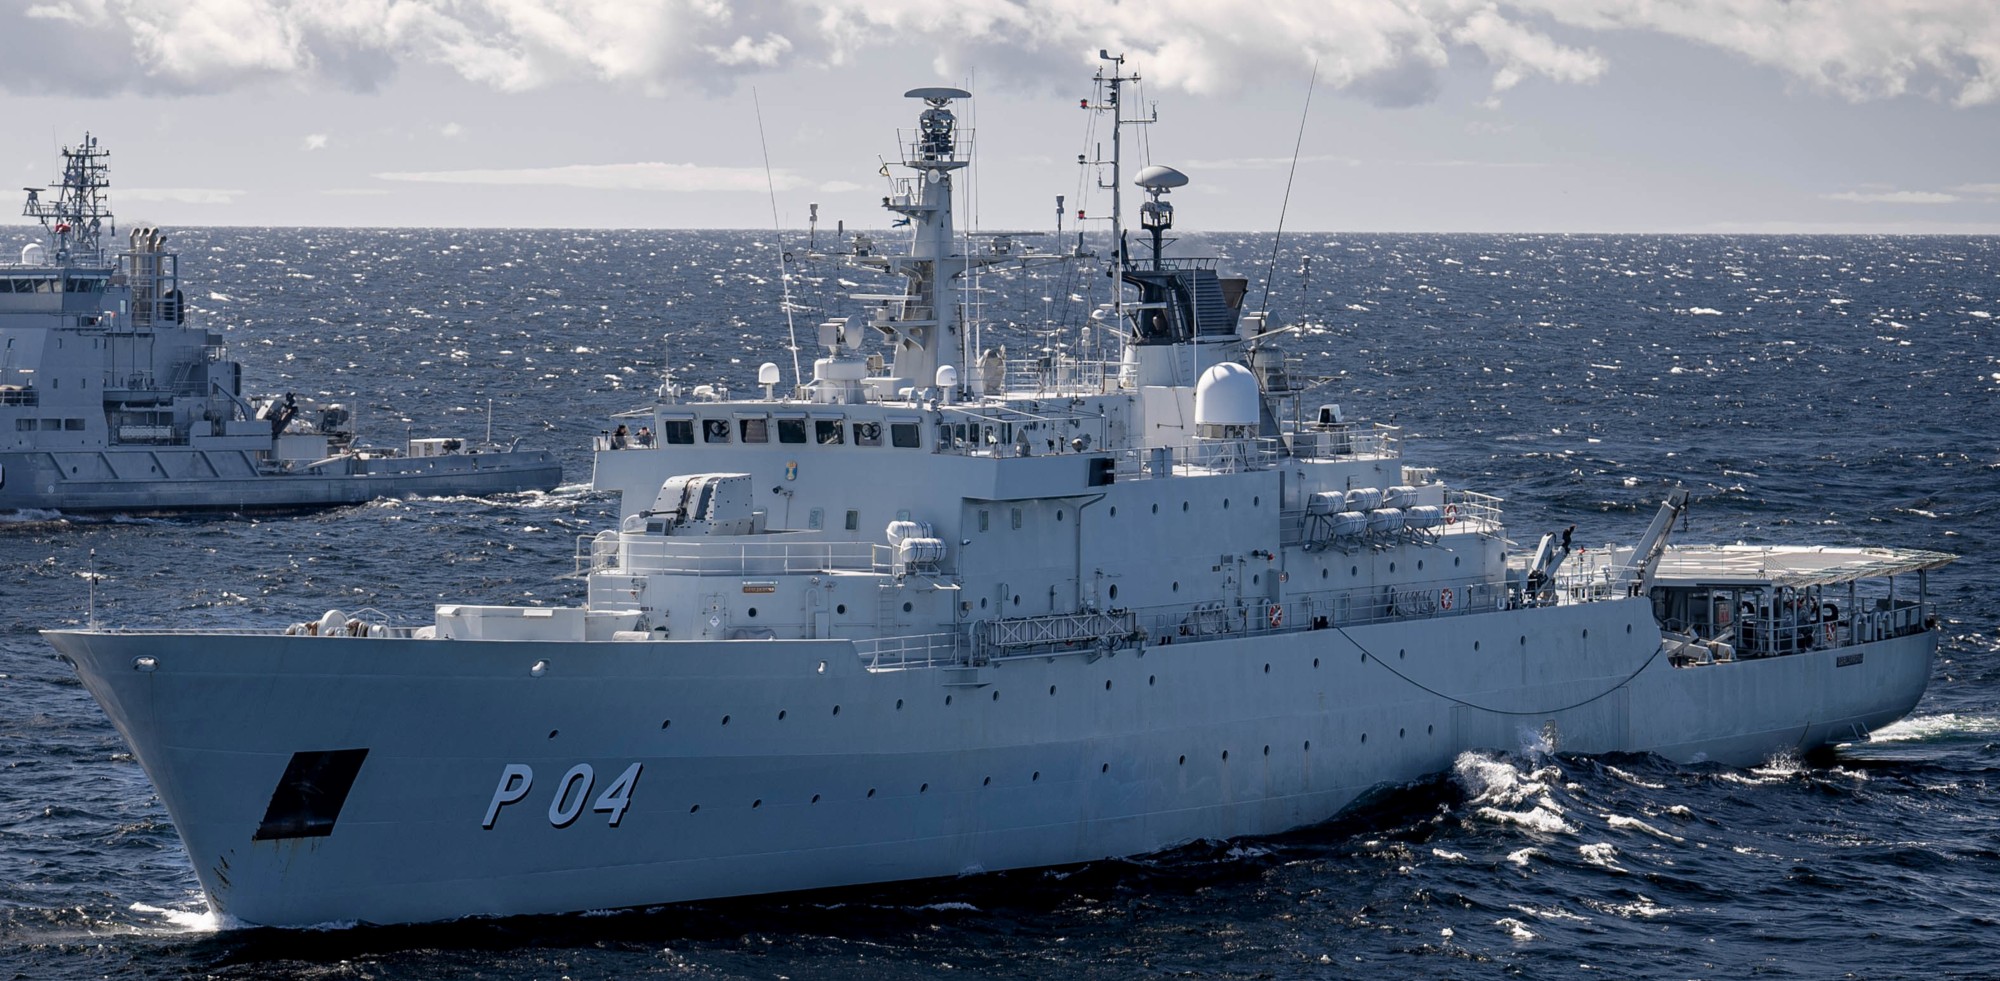 p04 hswms carlskrona hms ocean patrol vessel opv swedish navy svenska marinen försvarsmakten 09